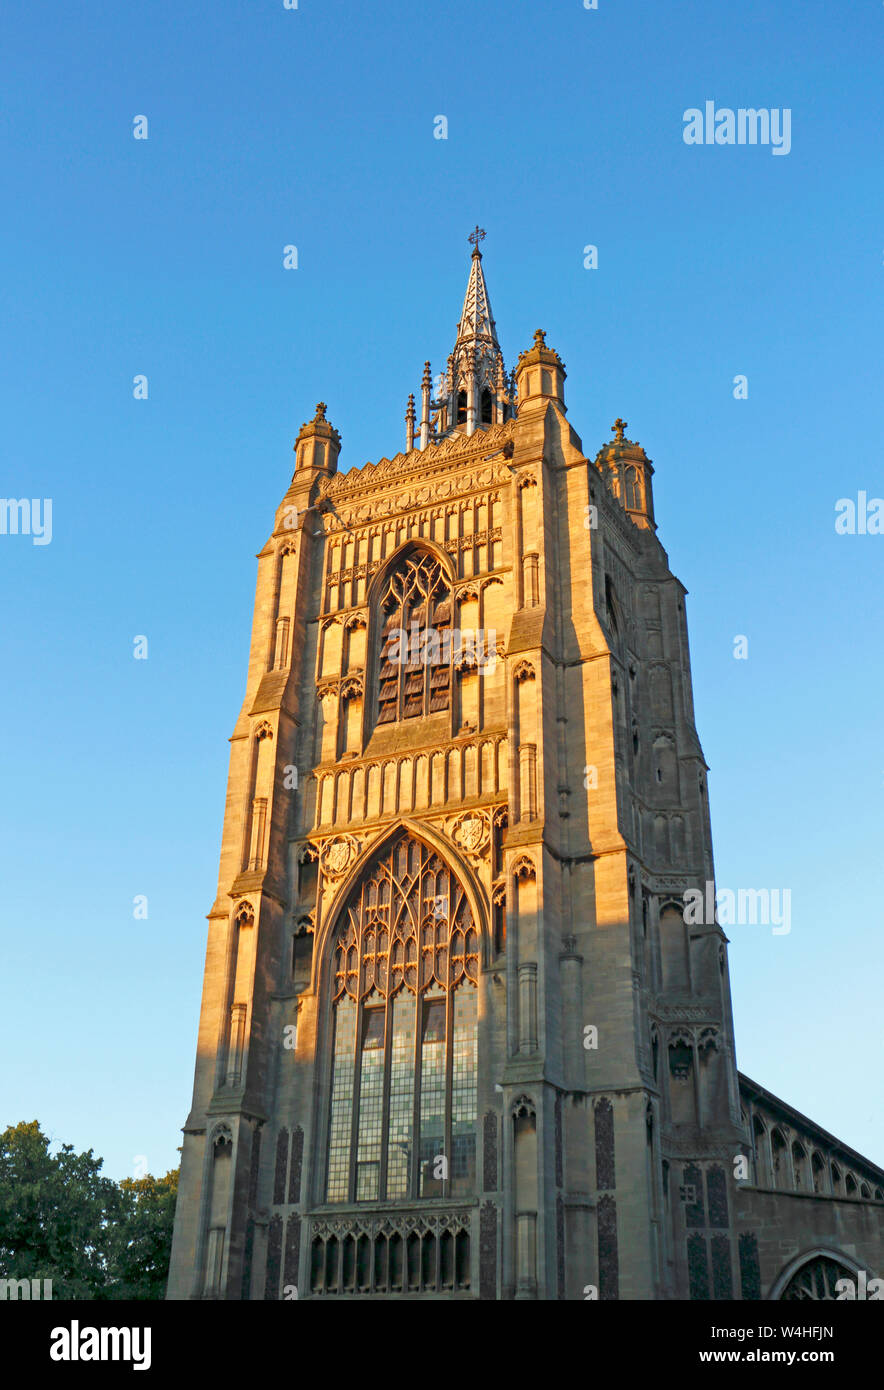 Una vista della torre della chiesa di St Peter Mancroft in una serata estiva nel centro città di Norwich, Norfolk, Inghilterra, Regno Unito, Europa. Foto Stock